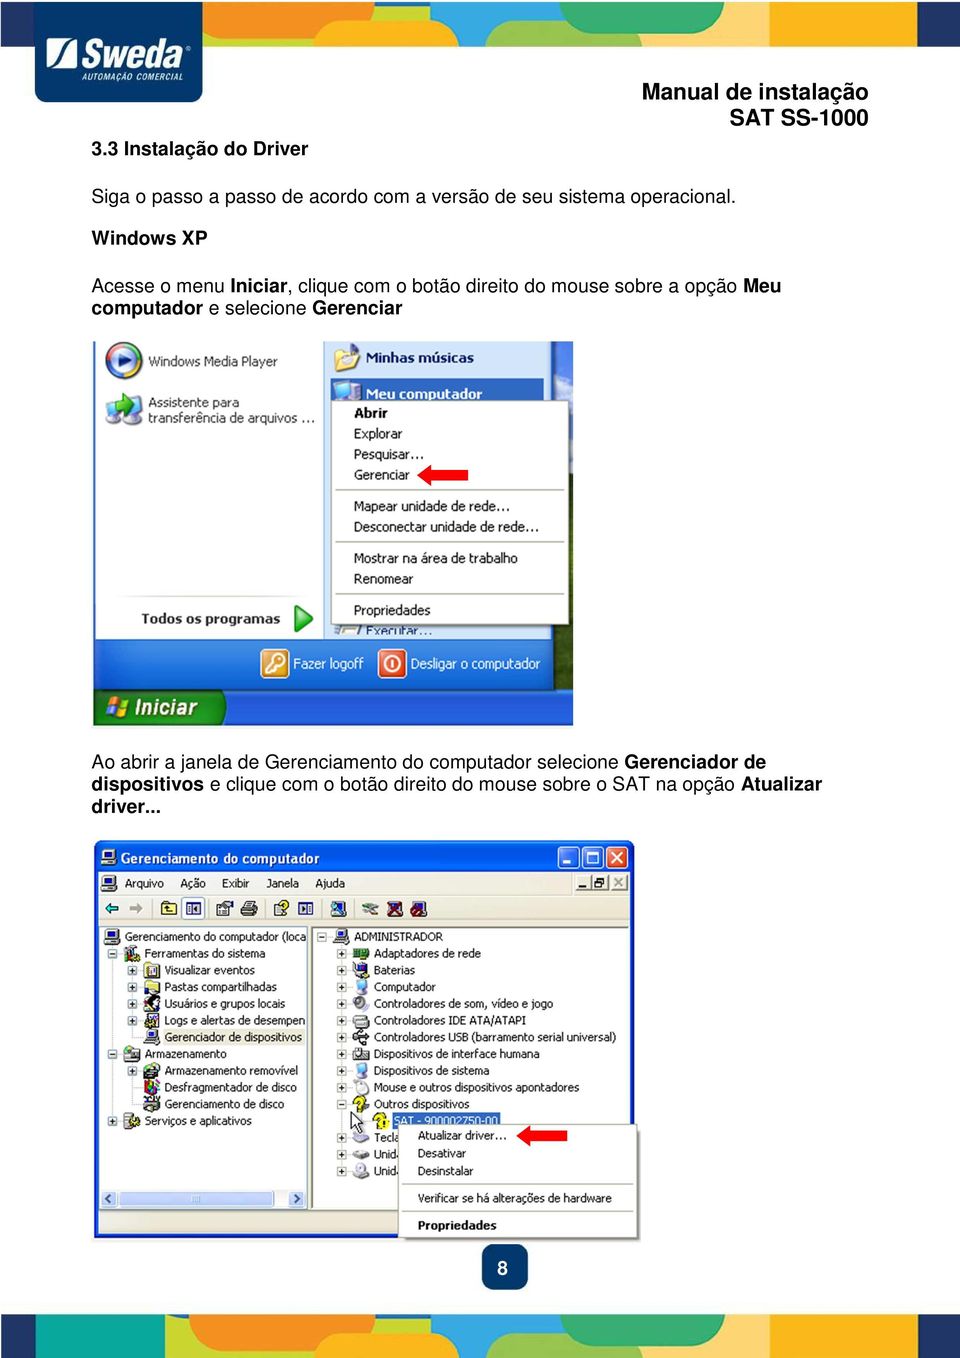 Windows XP Acesse o menu Iniciar, clique com o botão direito do mouse sobre a opção Meu computador e